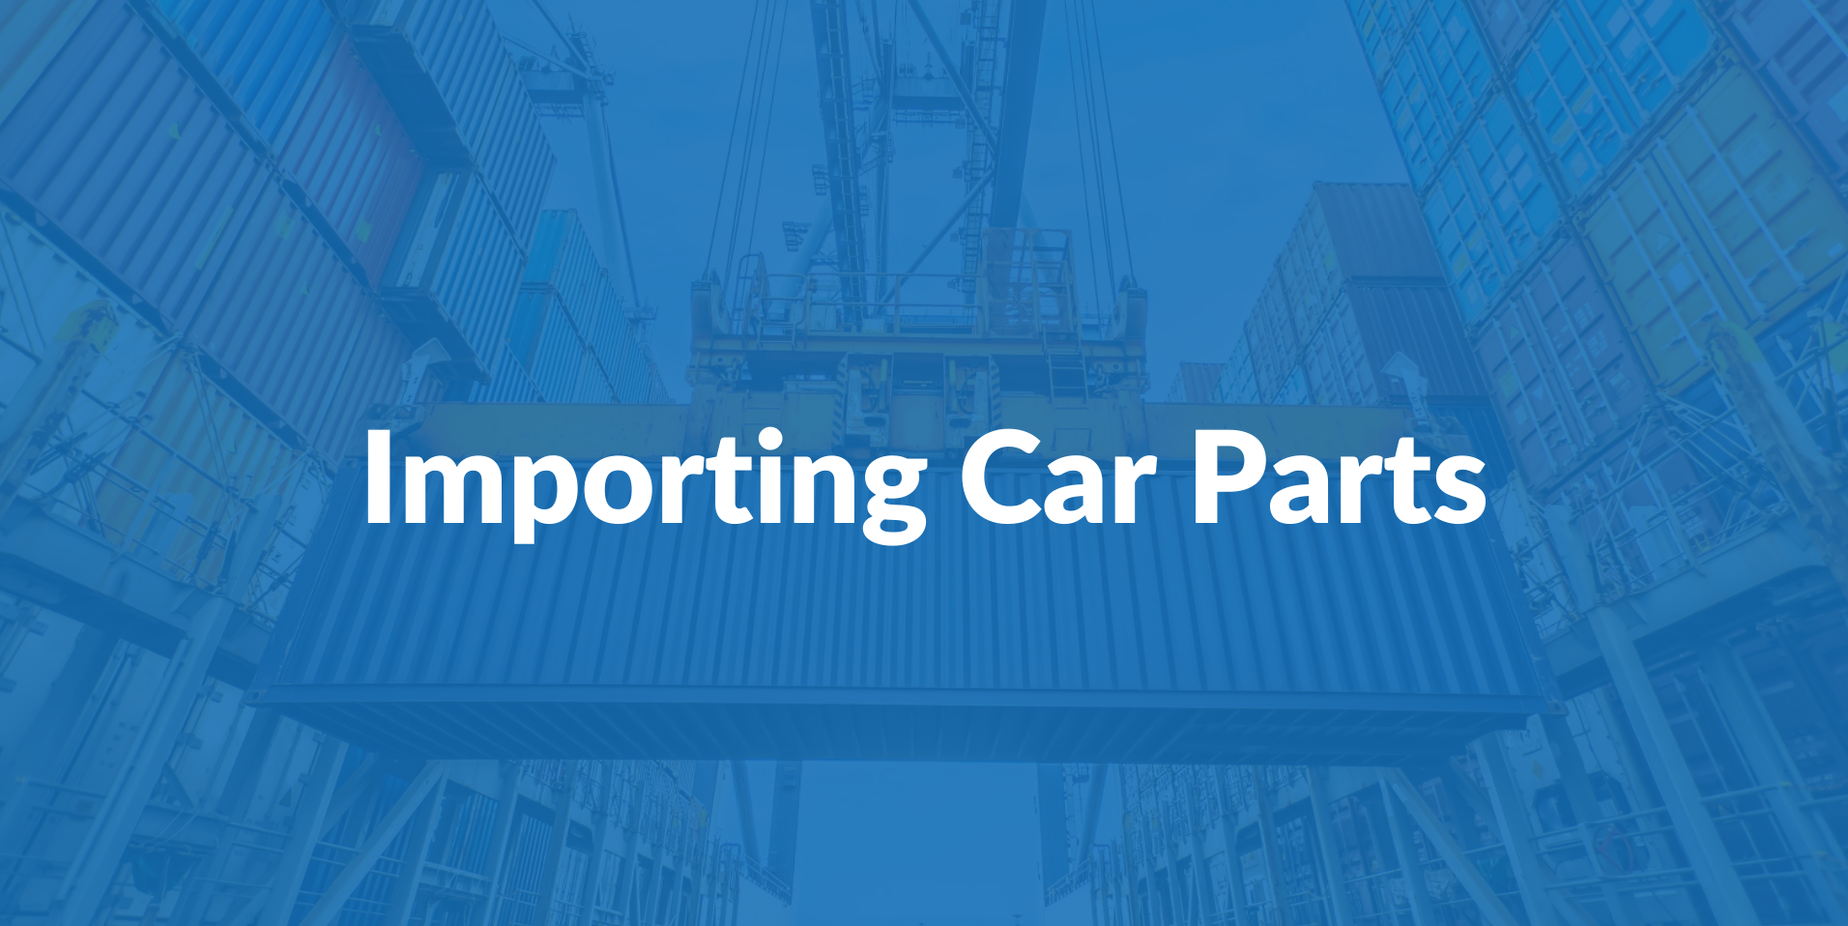 Importing Car Parts